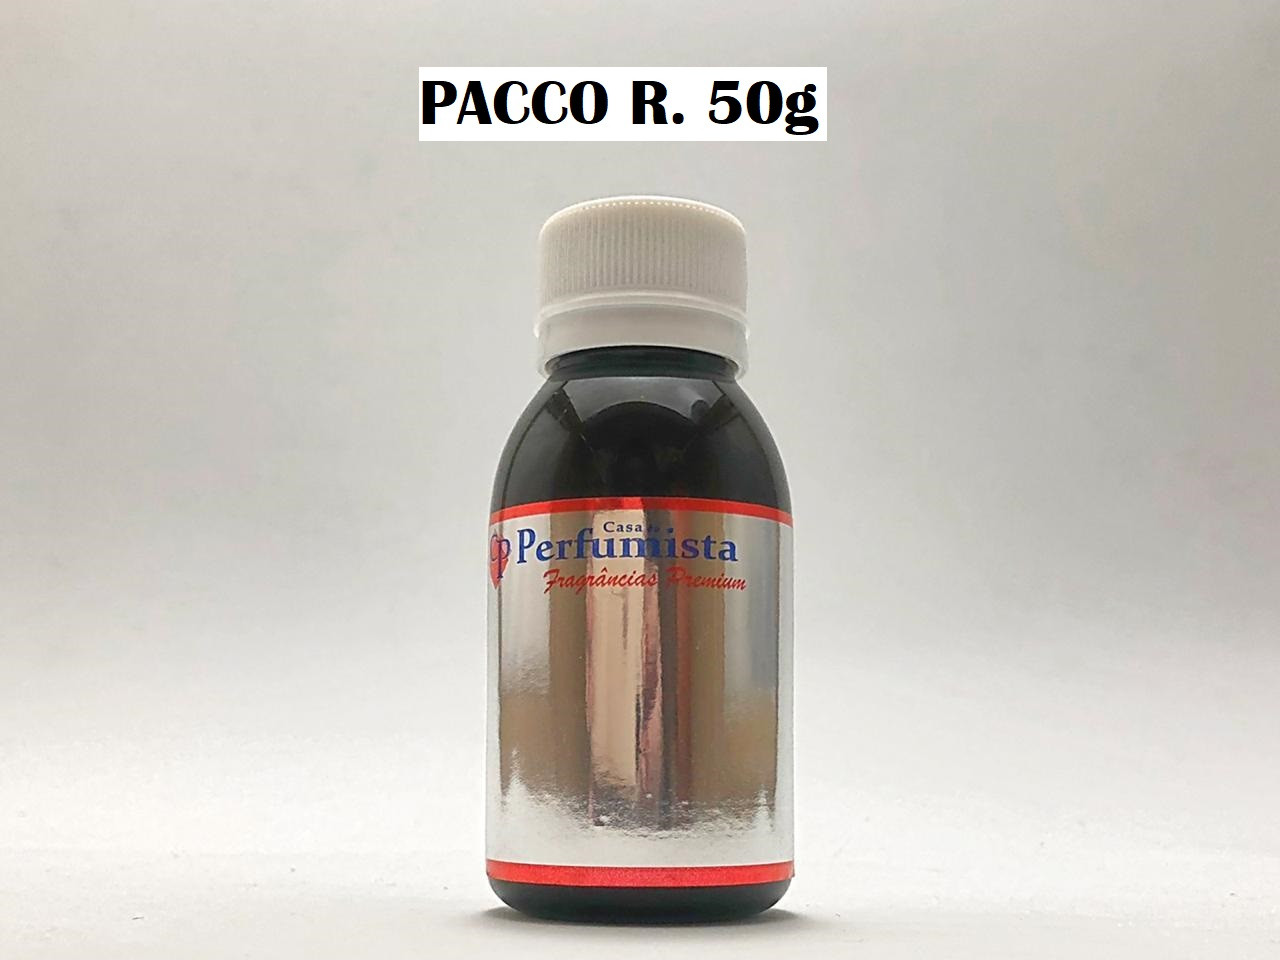 PACCO R. 50g - Inspiração: Paco Rabanne Masculino 